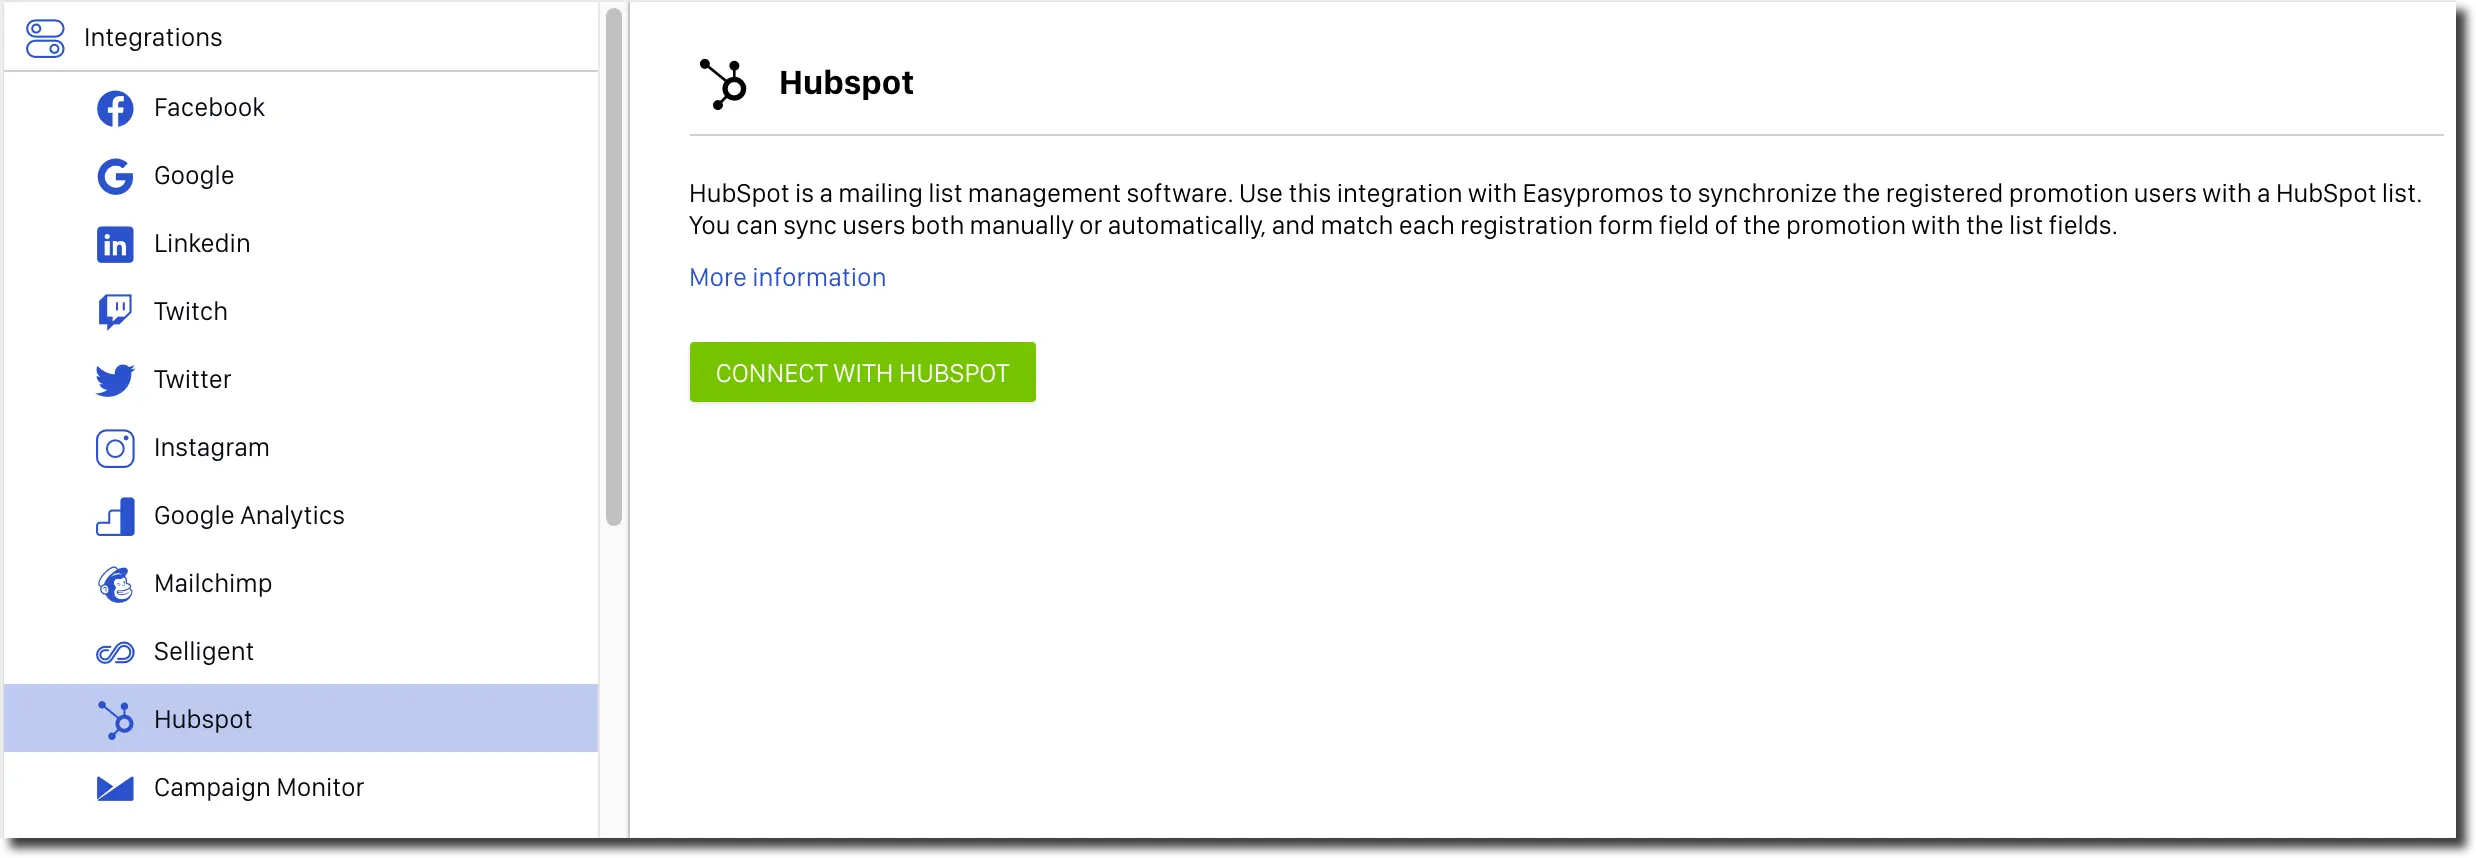 HubSpot integration tool